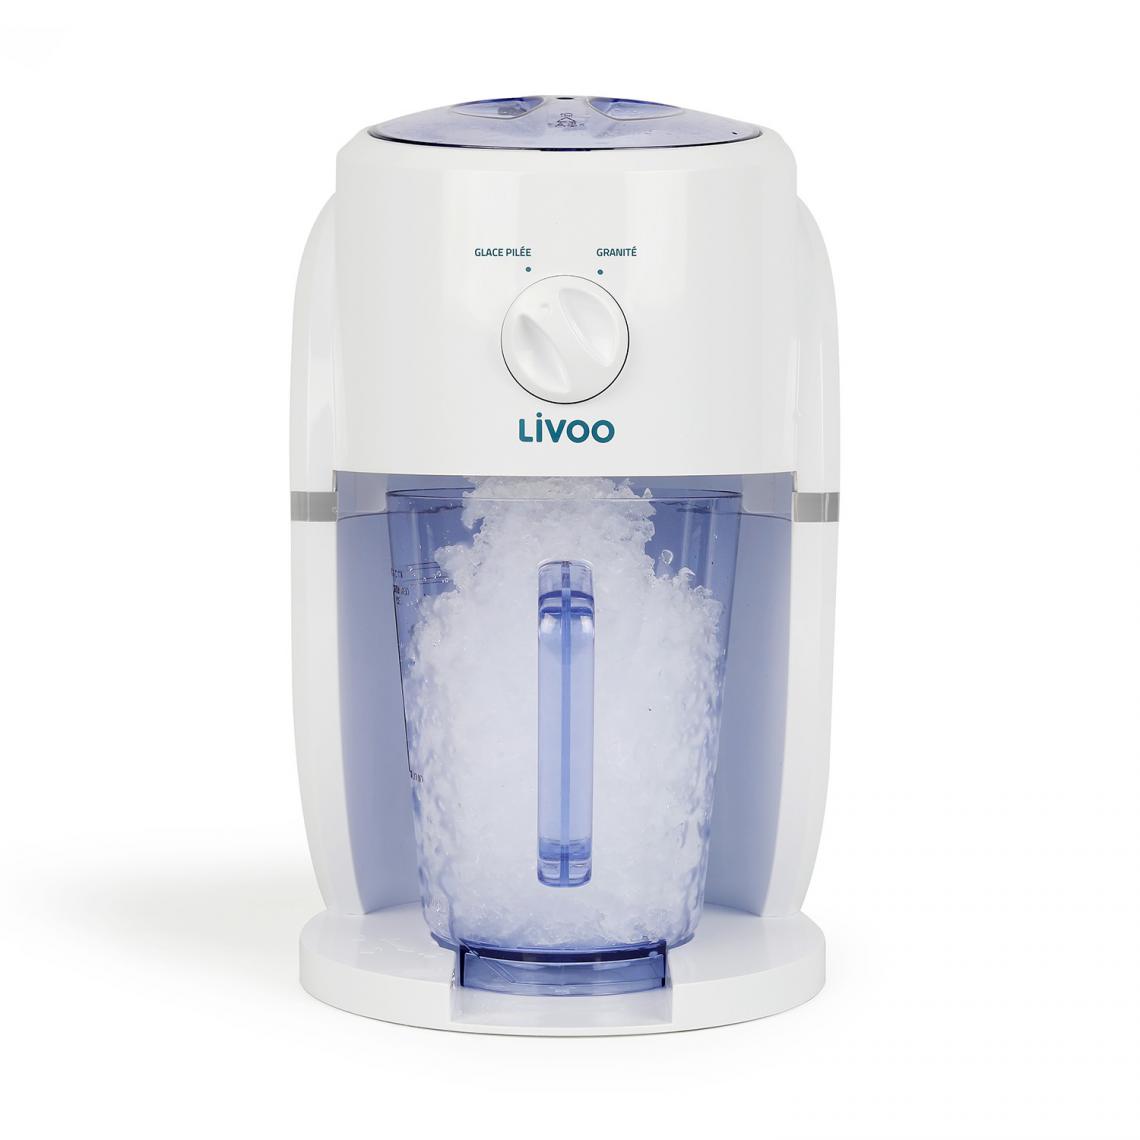 Livoo - Appareil 2 en 1 granités et glace pilée - Pour cocktails ou boissons rafraîchissantes - 1,1 litre - Machine à soda